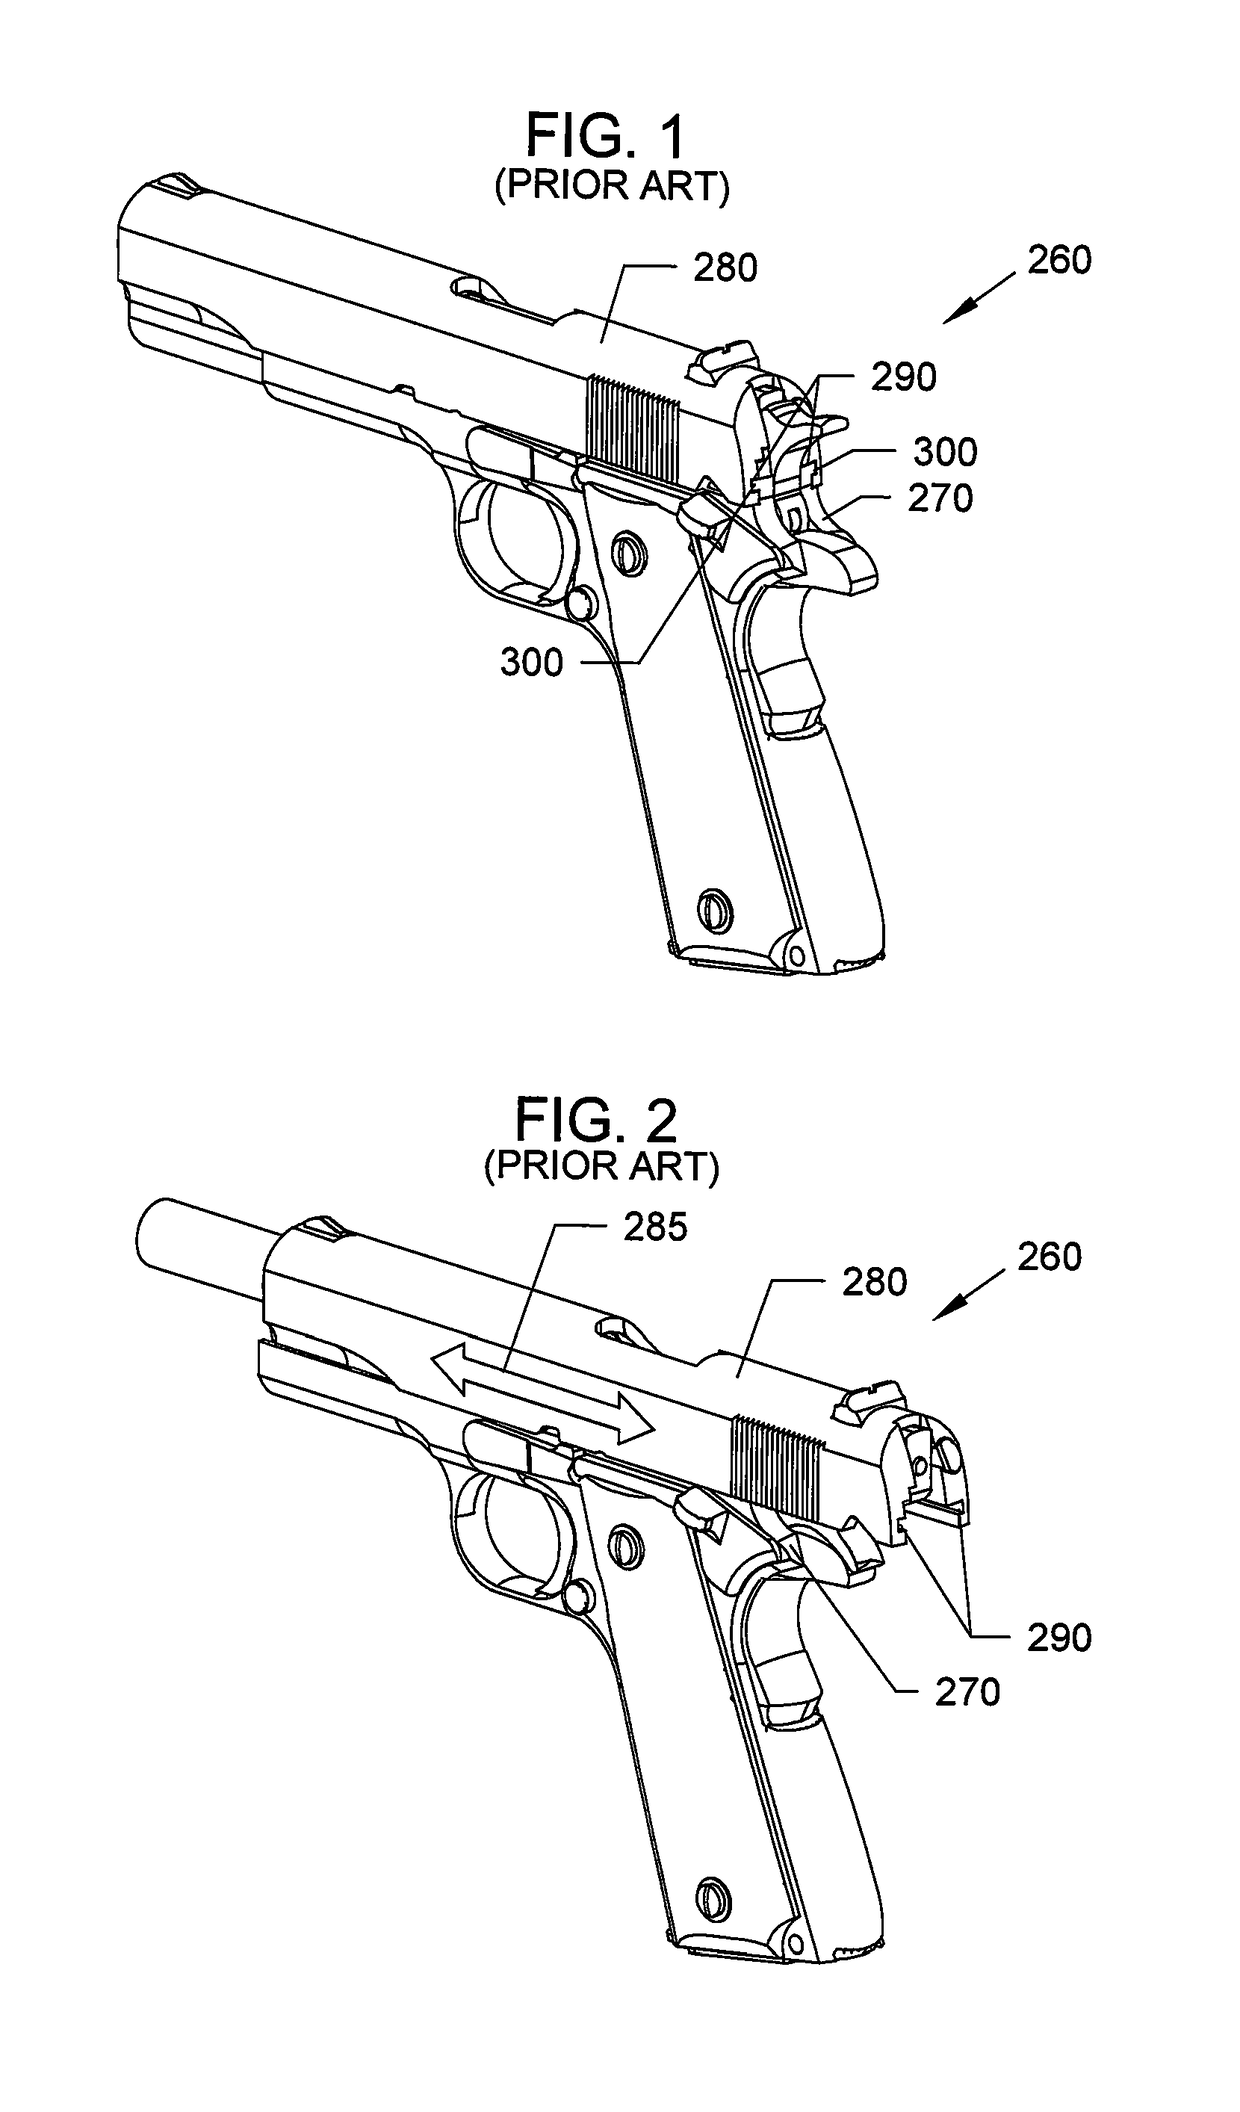 Handgun with improved slide